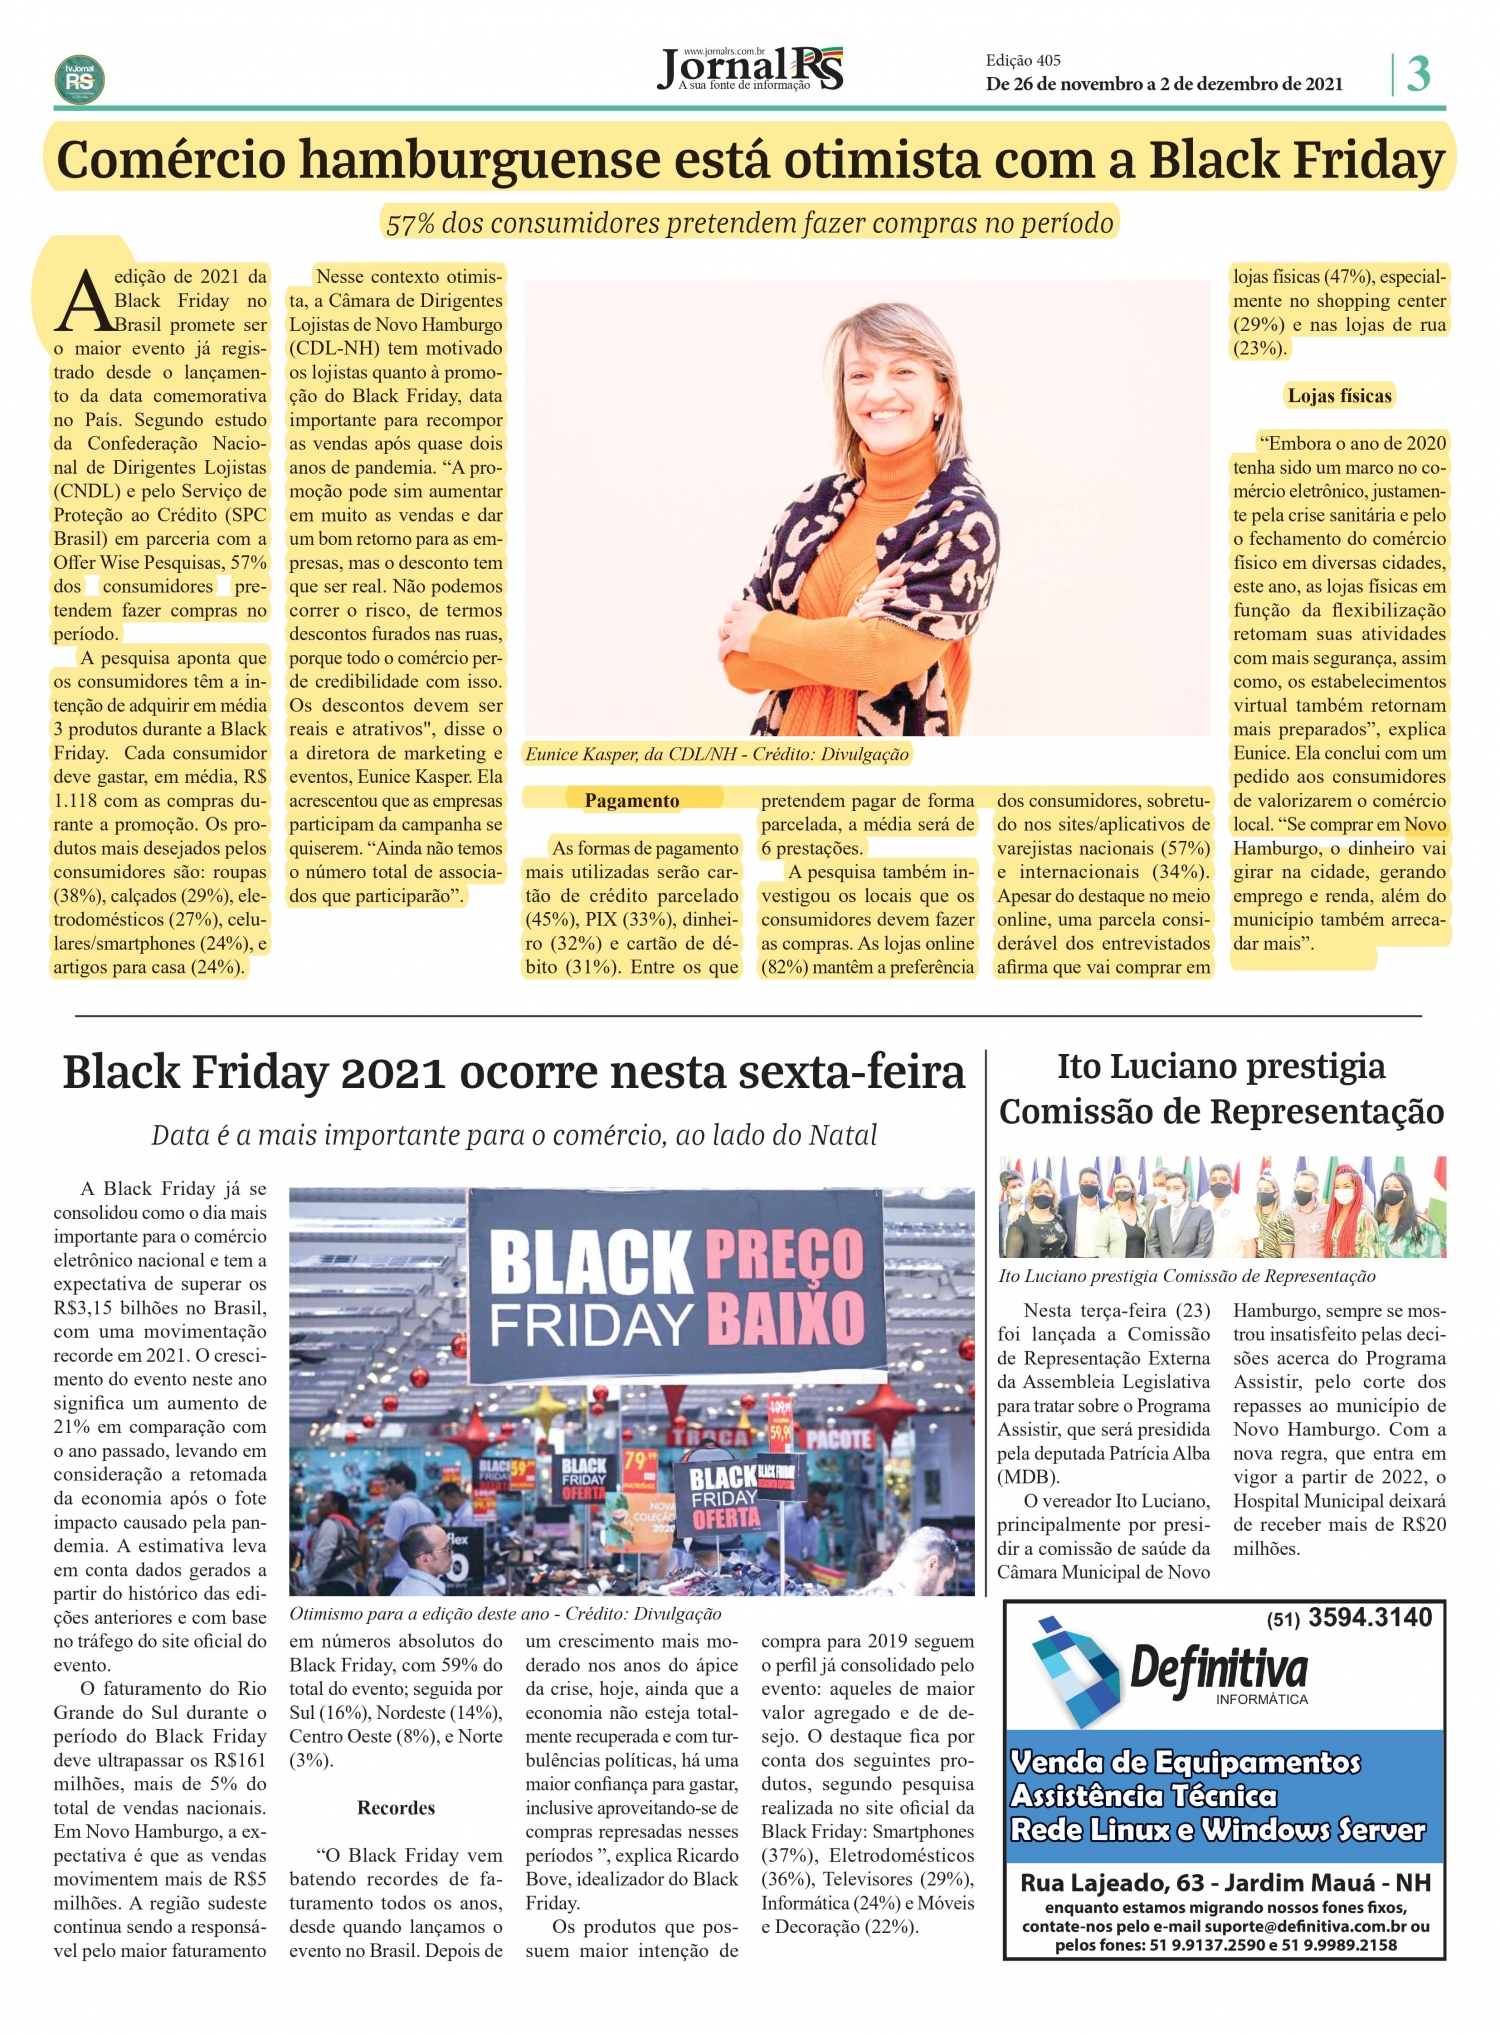 CDL NH é notícia em jornal da região com a Black Friday 